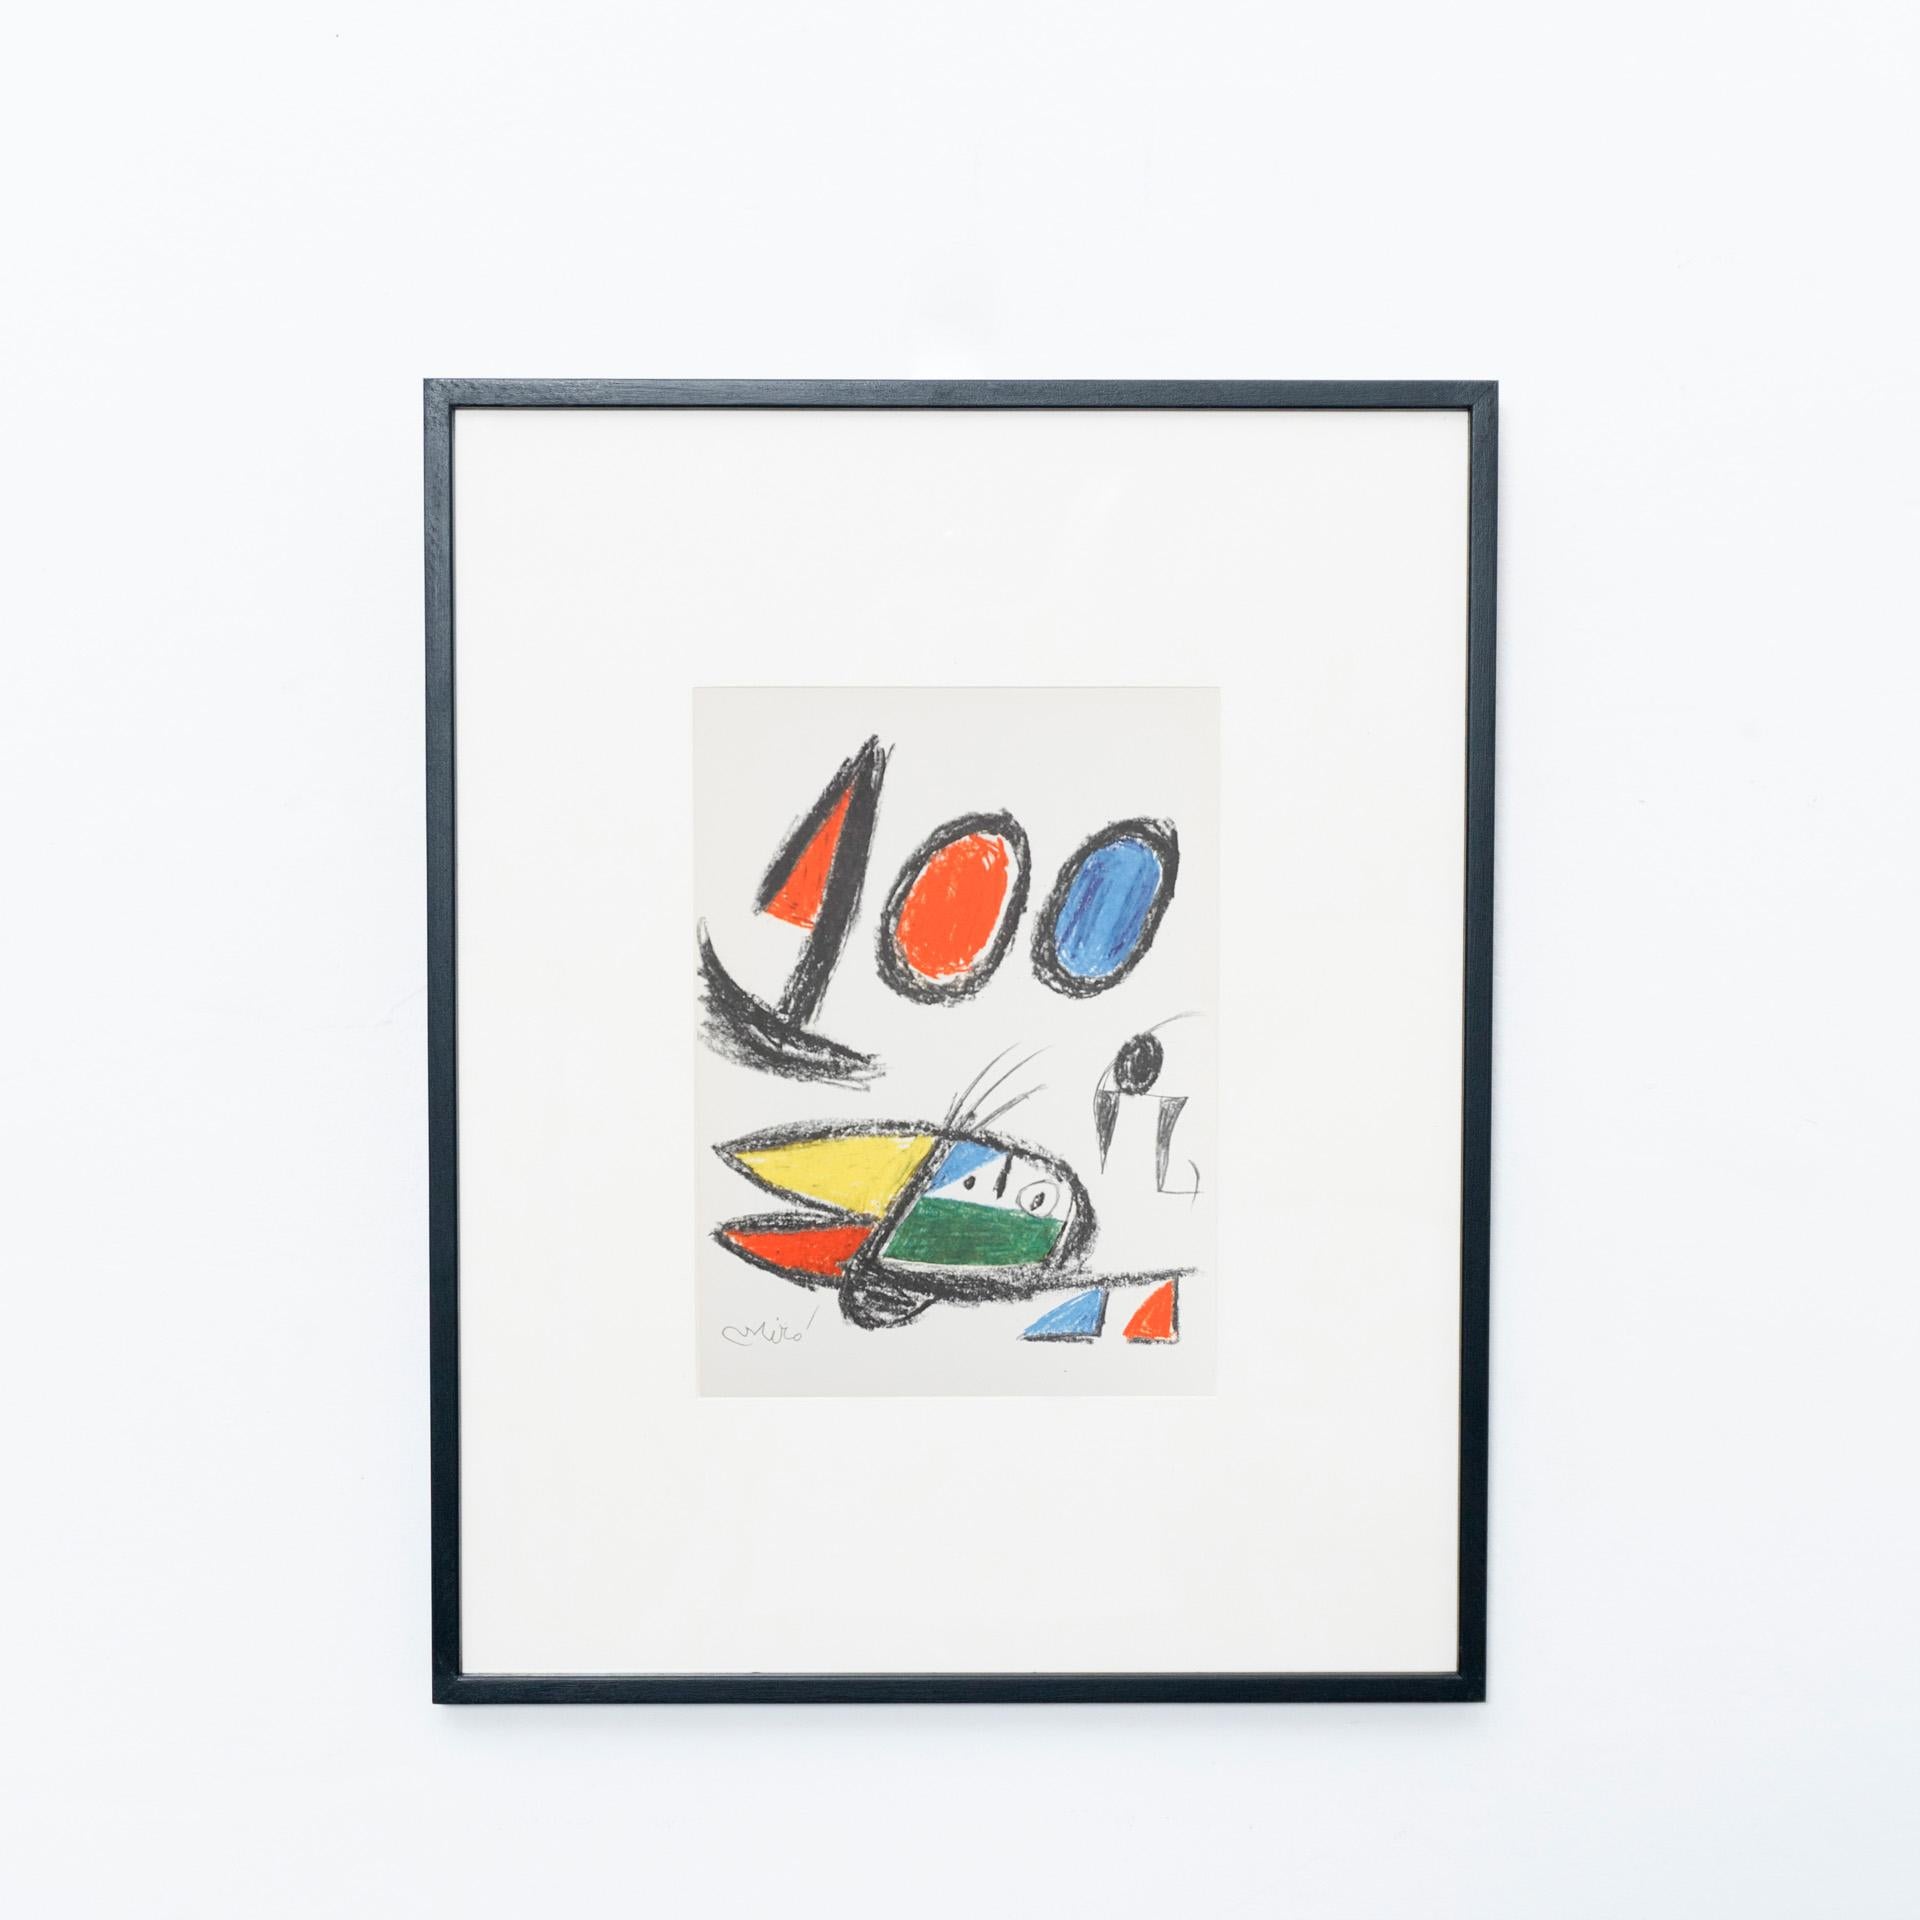 Photolithographie de Miró, vers 1970.

Reproduction en héliogravure estampillée de la série de Bolaffiarte. Édition limitée à 5000 exemplaires.

Numéro exemplaire 4709.

La photolithographie est livrée encadrée. Le cadre sur les photos n'est